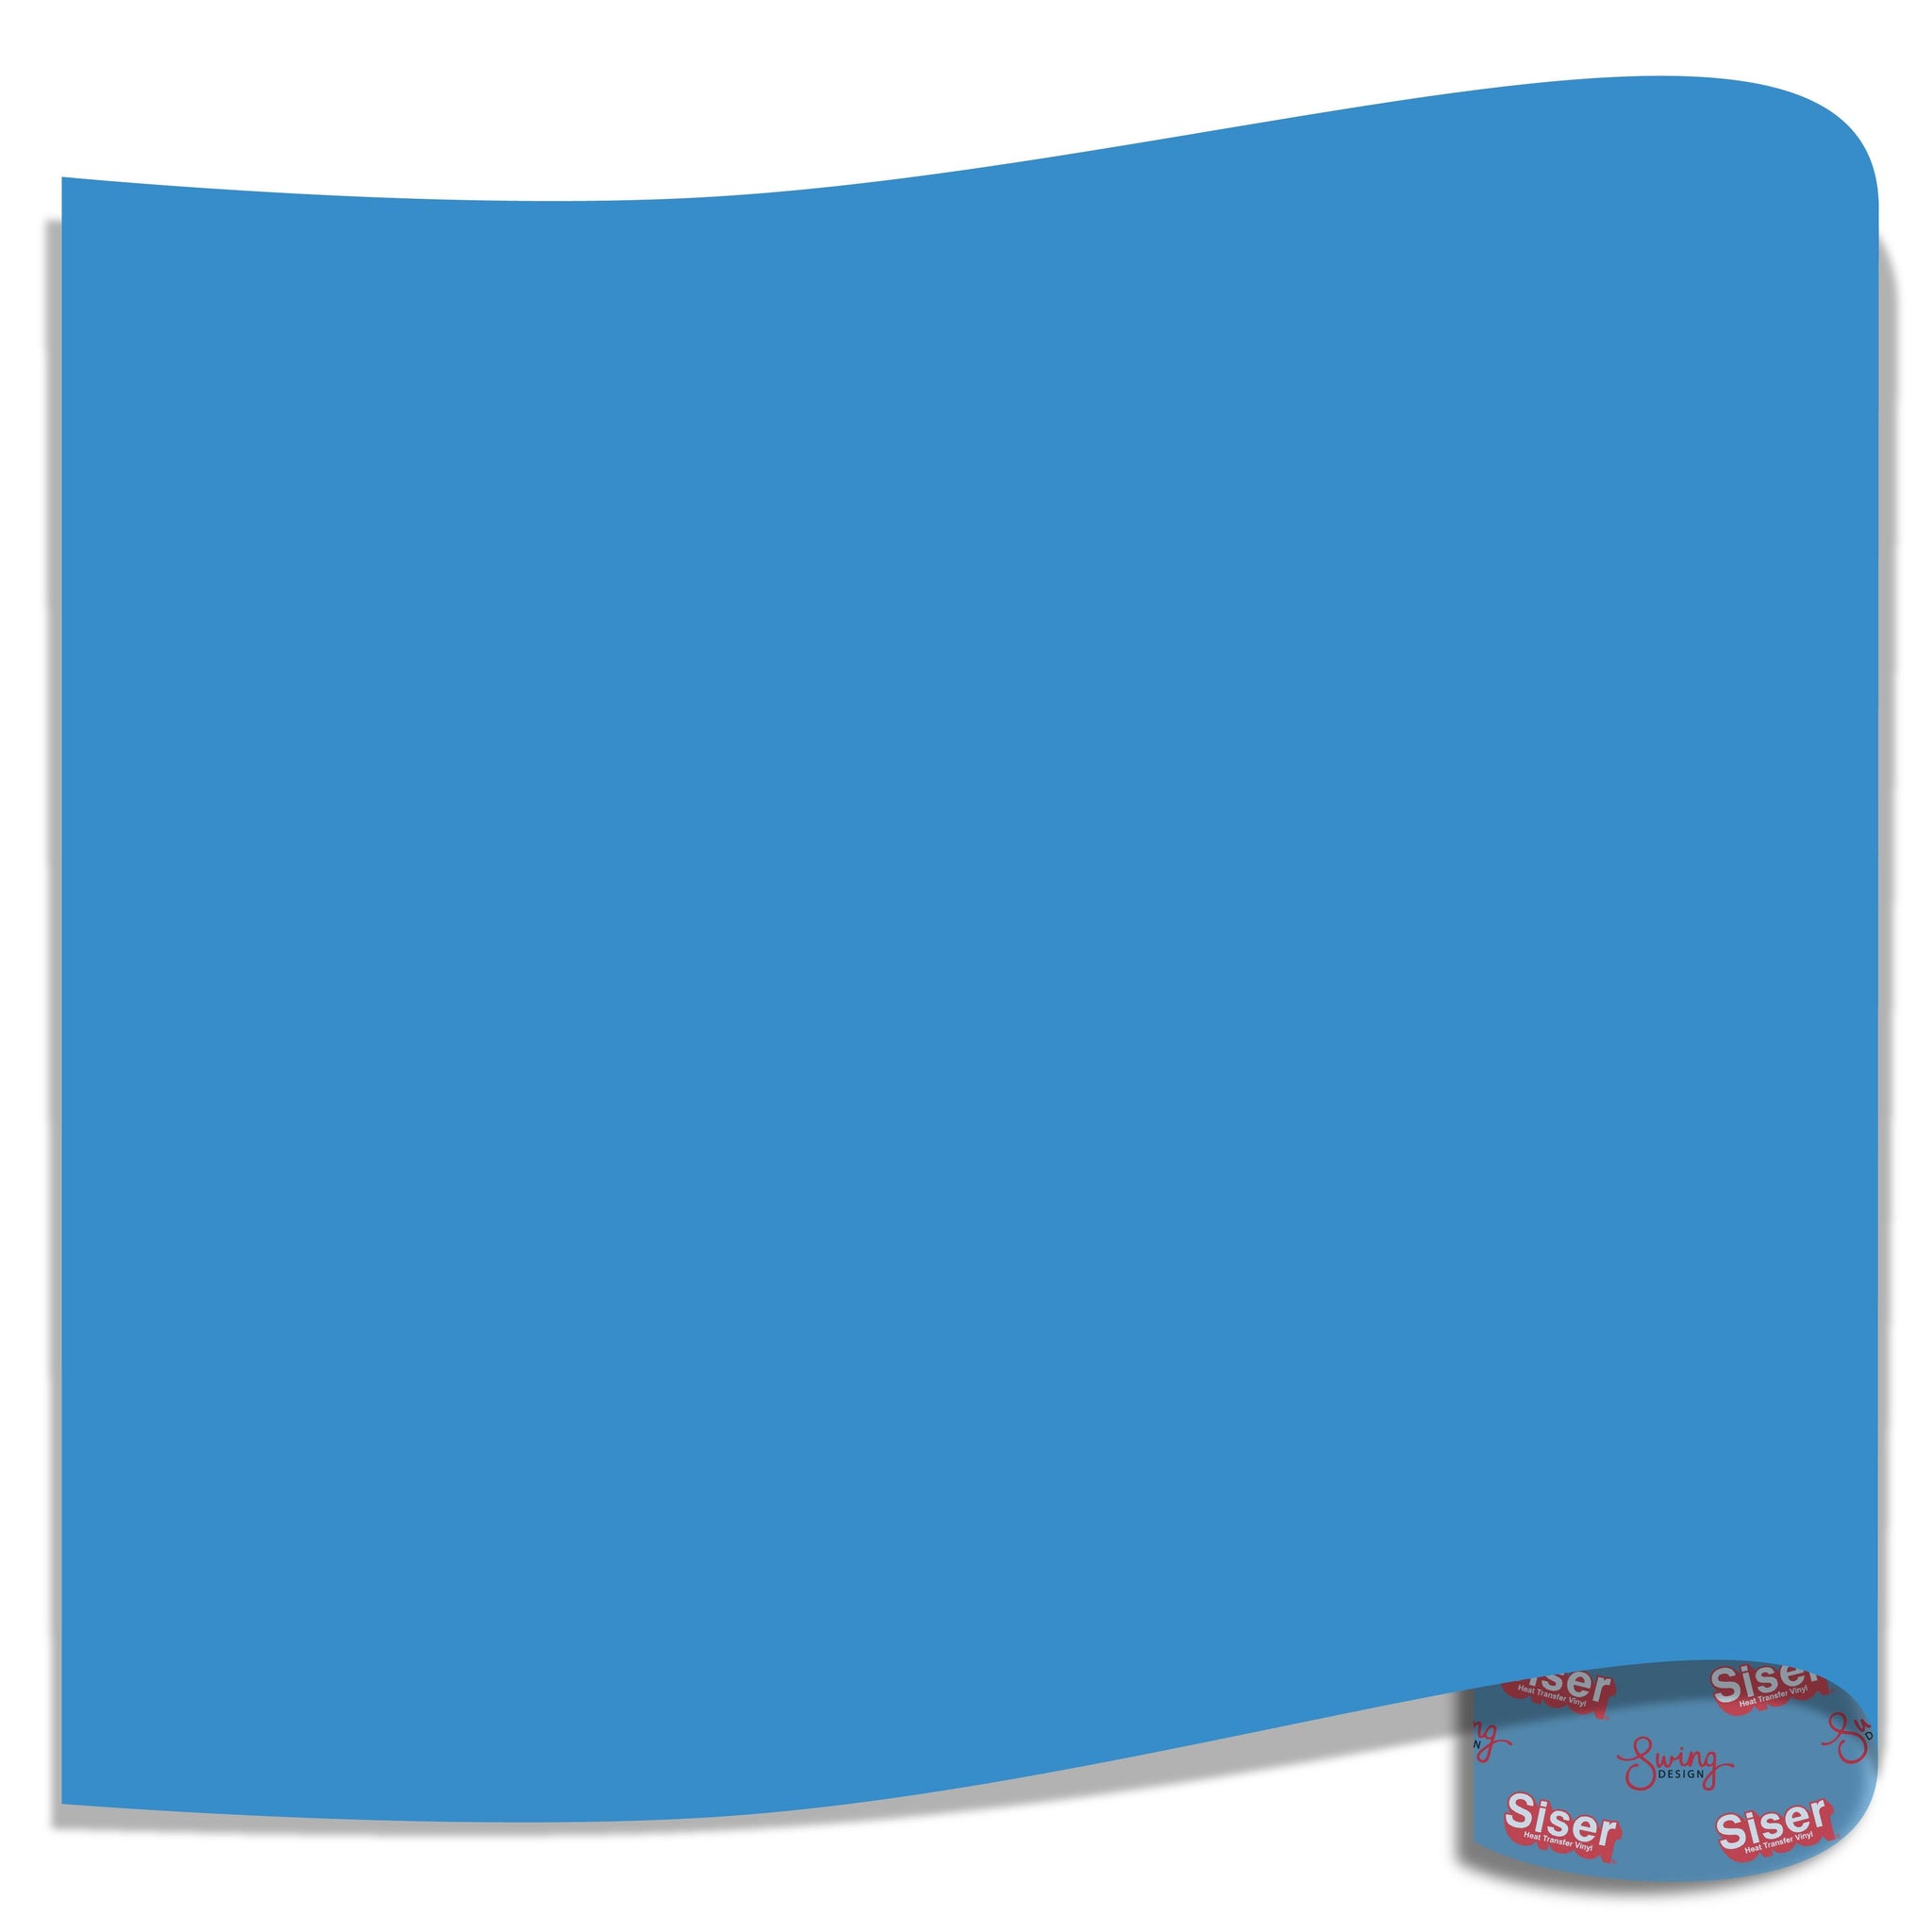 Siser EasyWeed Heat Transfer Vinyl (HTV) - Sky Blue - 15 in x 12 inch Sheet